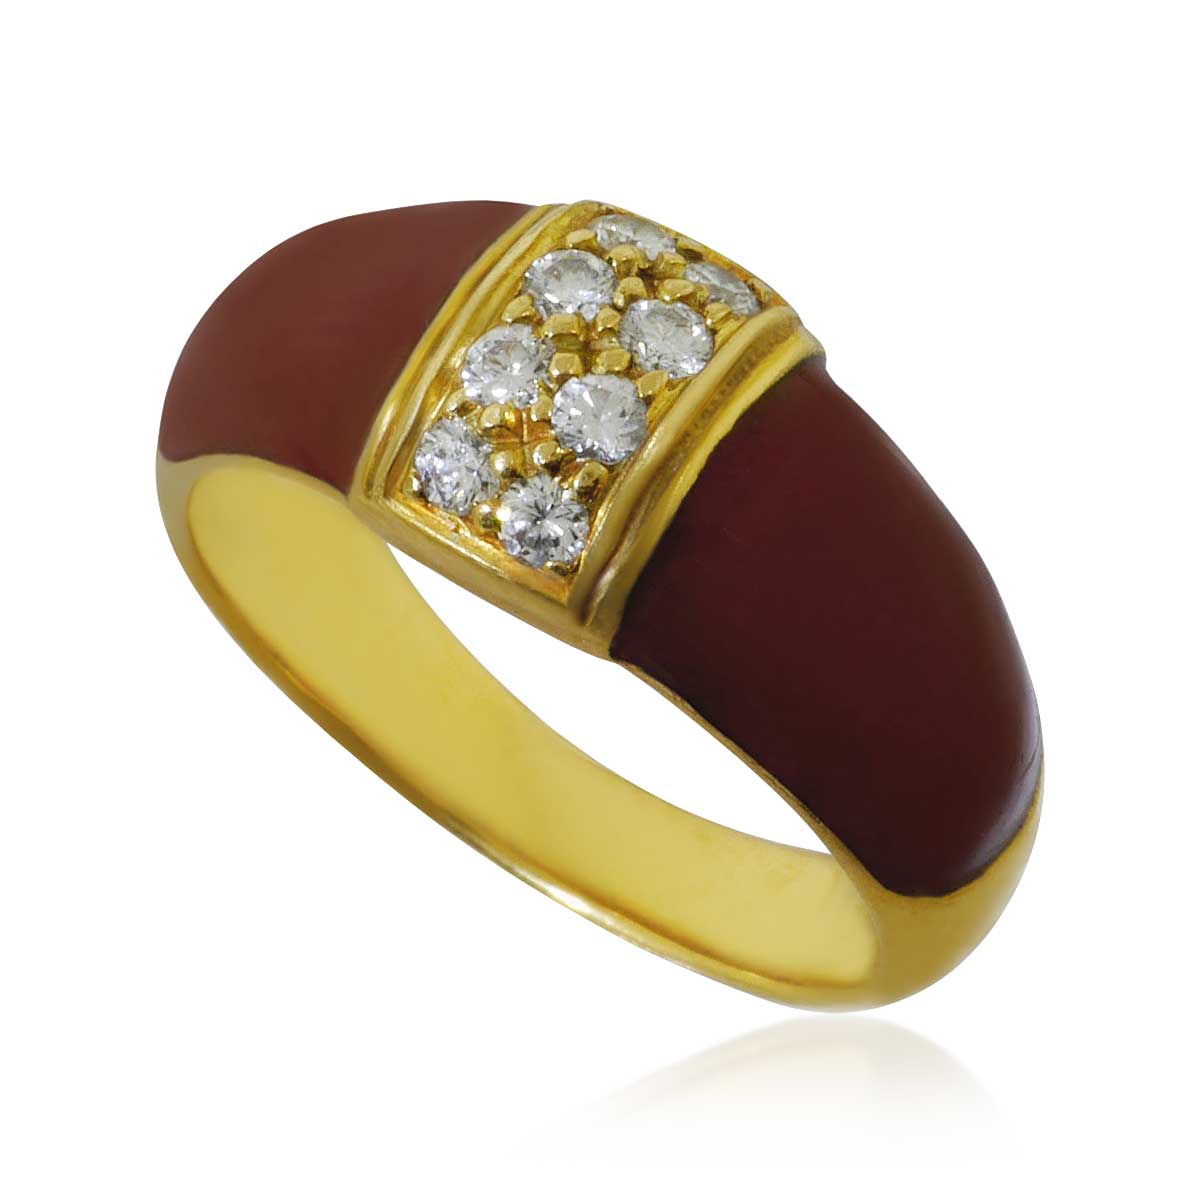   Goldring mit burgunder-rotem Email und 8 Diamanten in 750er Gelbgold 